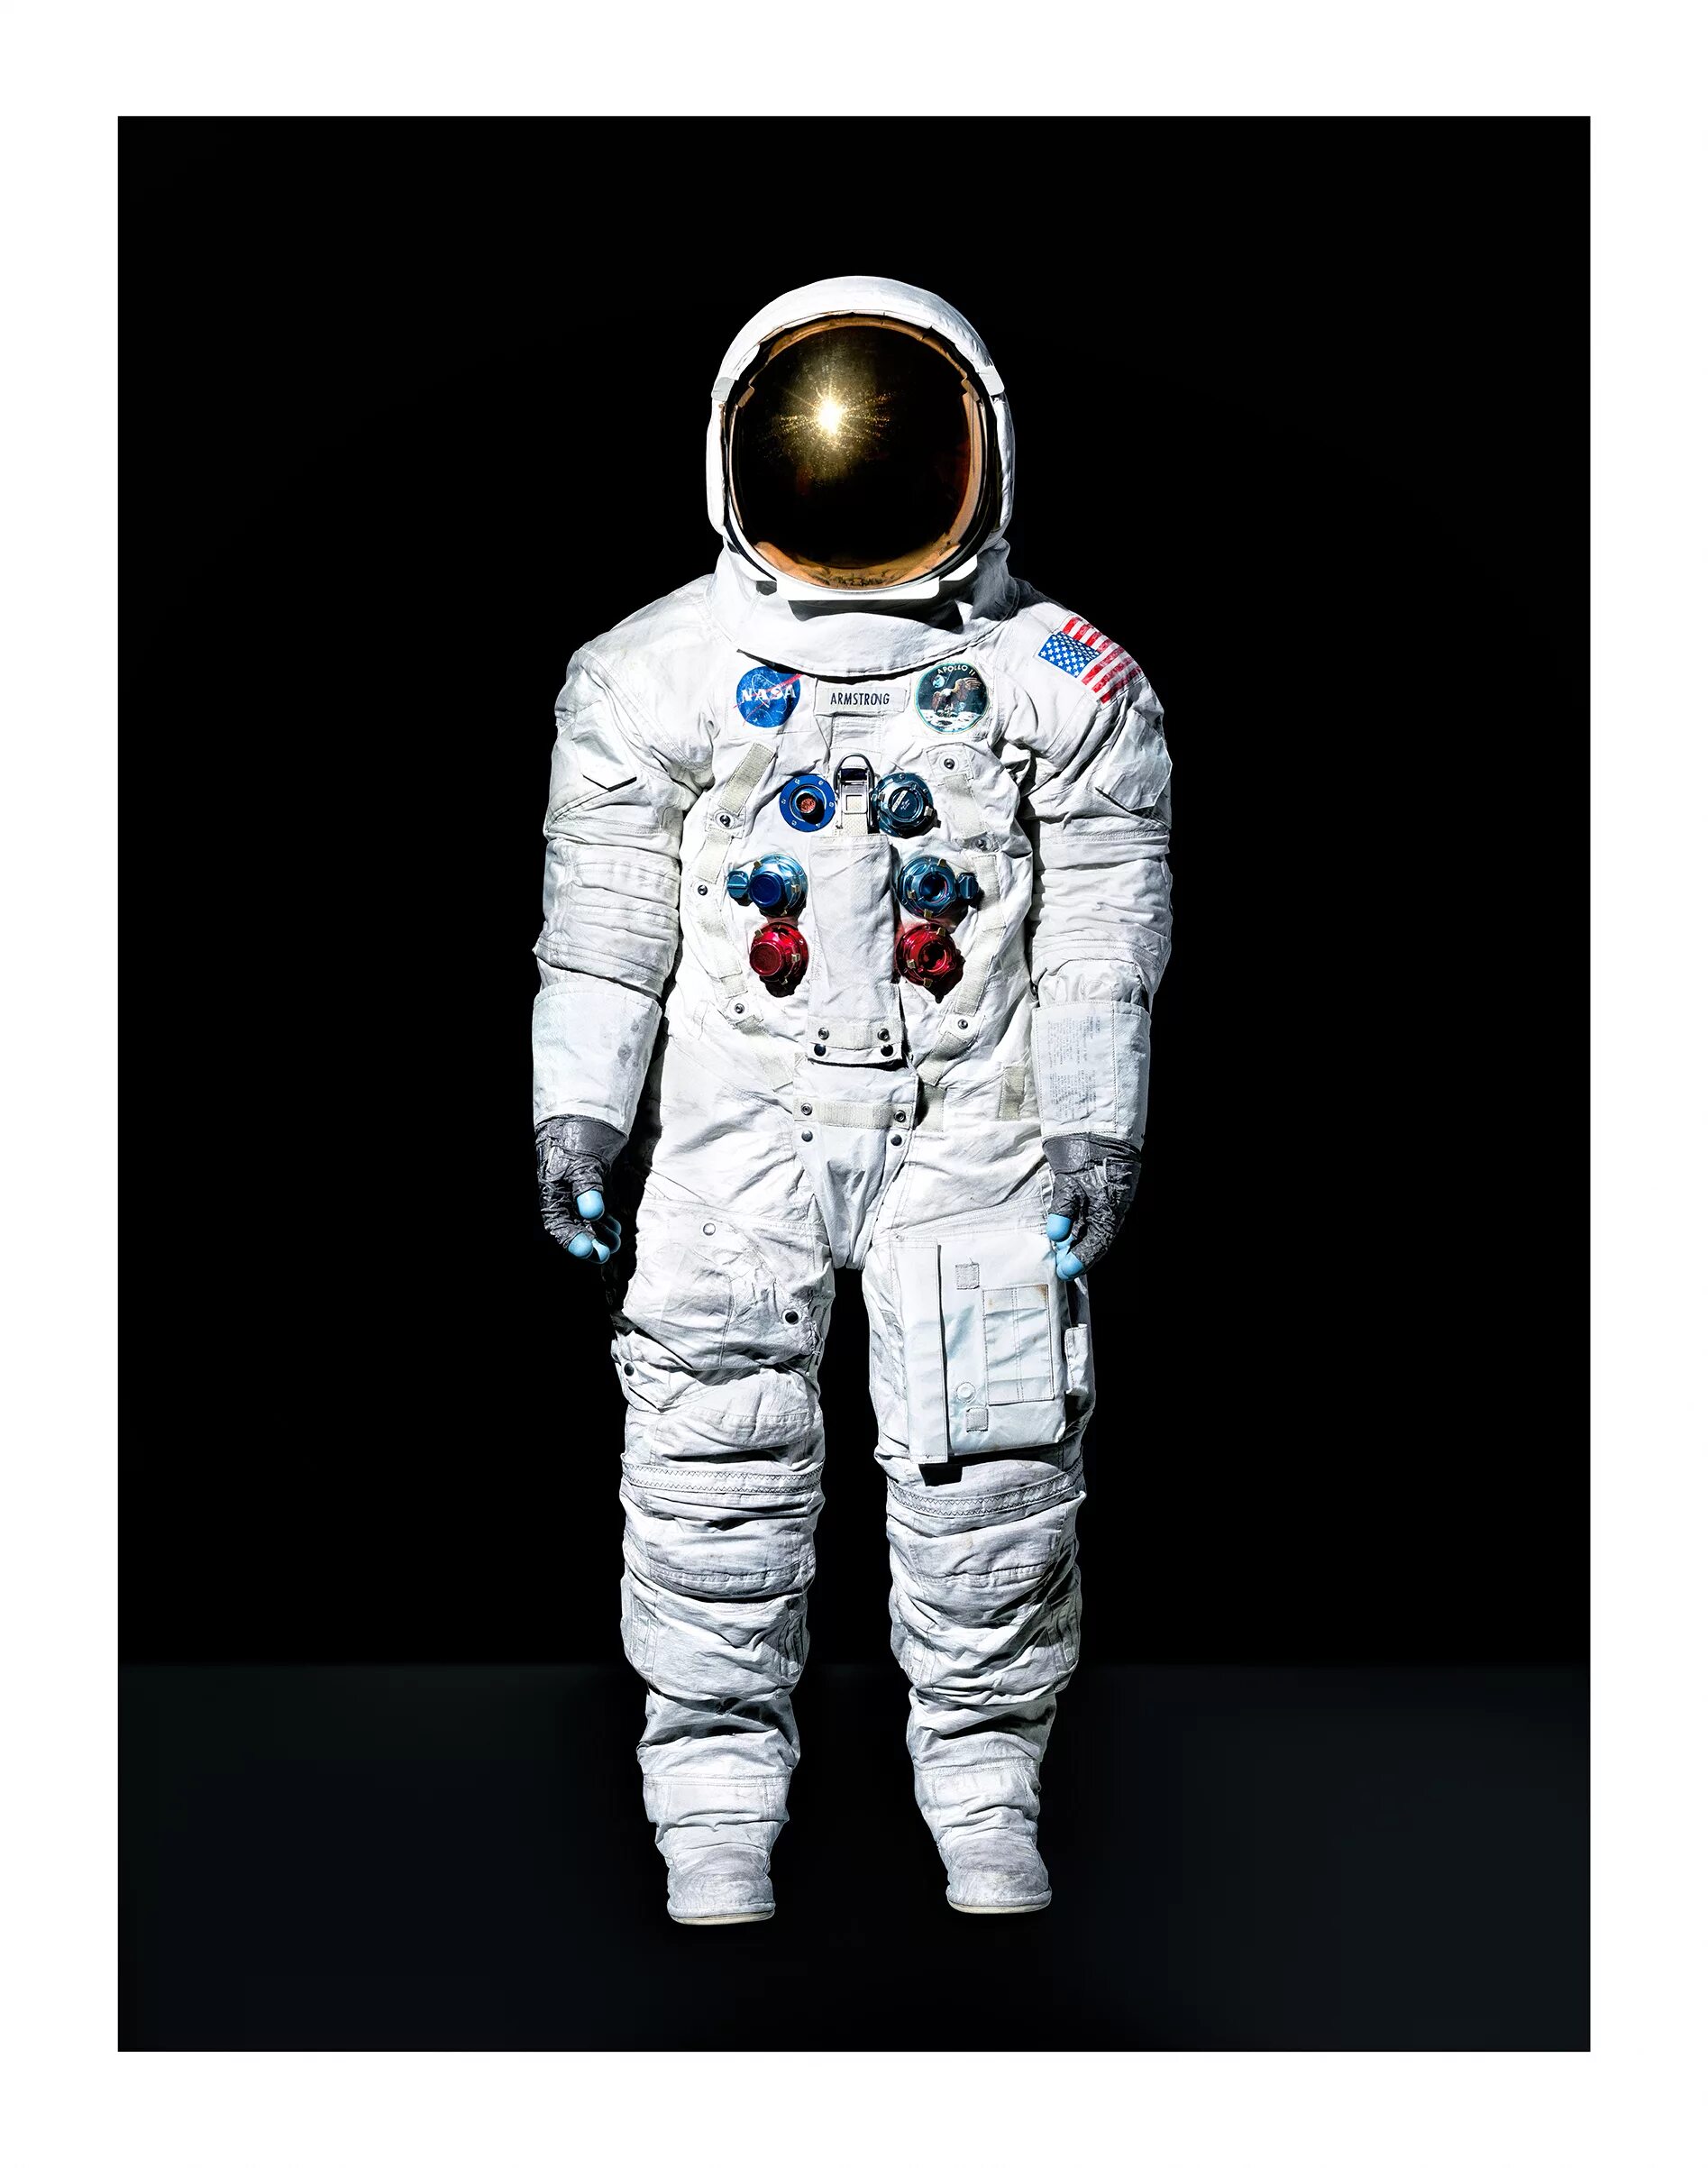 Скафандр Аполлон 11. Скафандр Космонавта. Скафандр Космонавта NASA. Скафандр Орлан. Скафандр космонавта весит